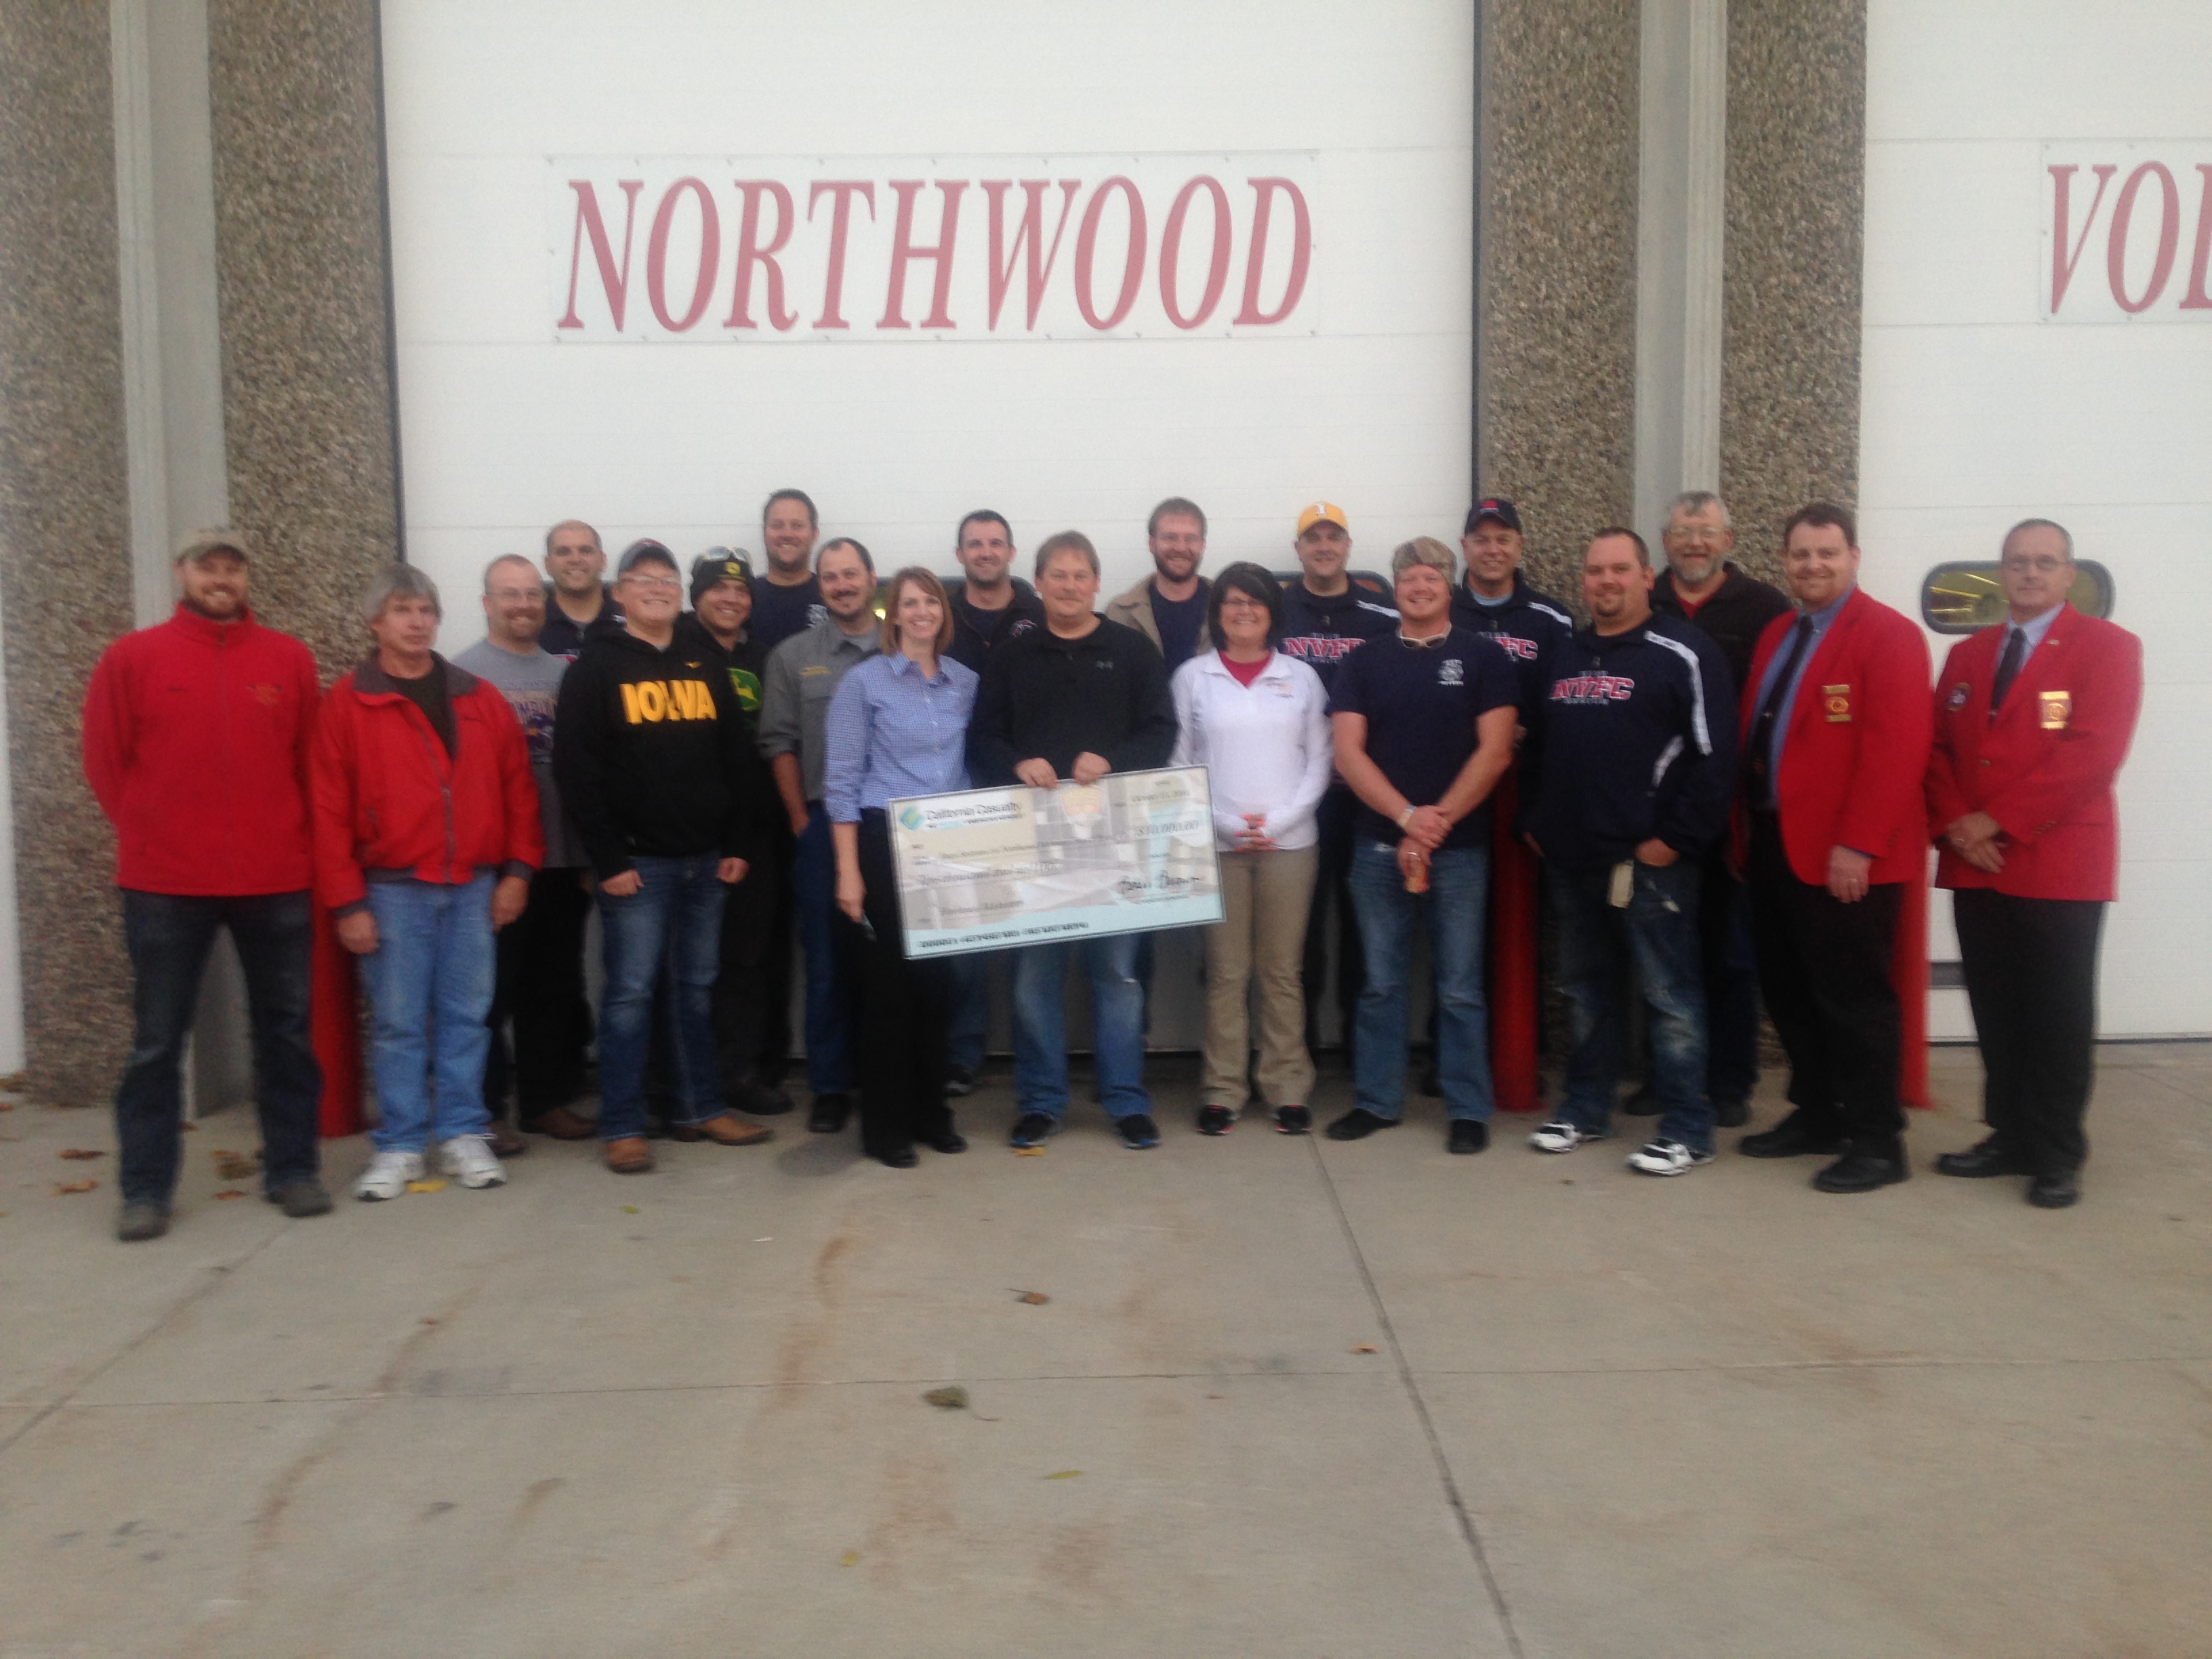 The Northwood Volunteer Fire Department